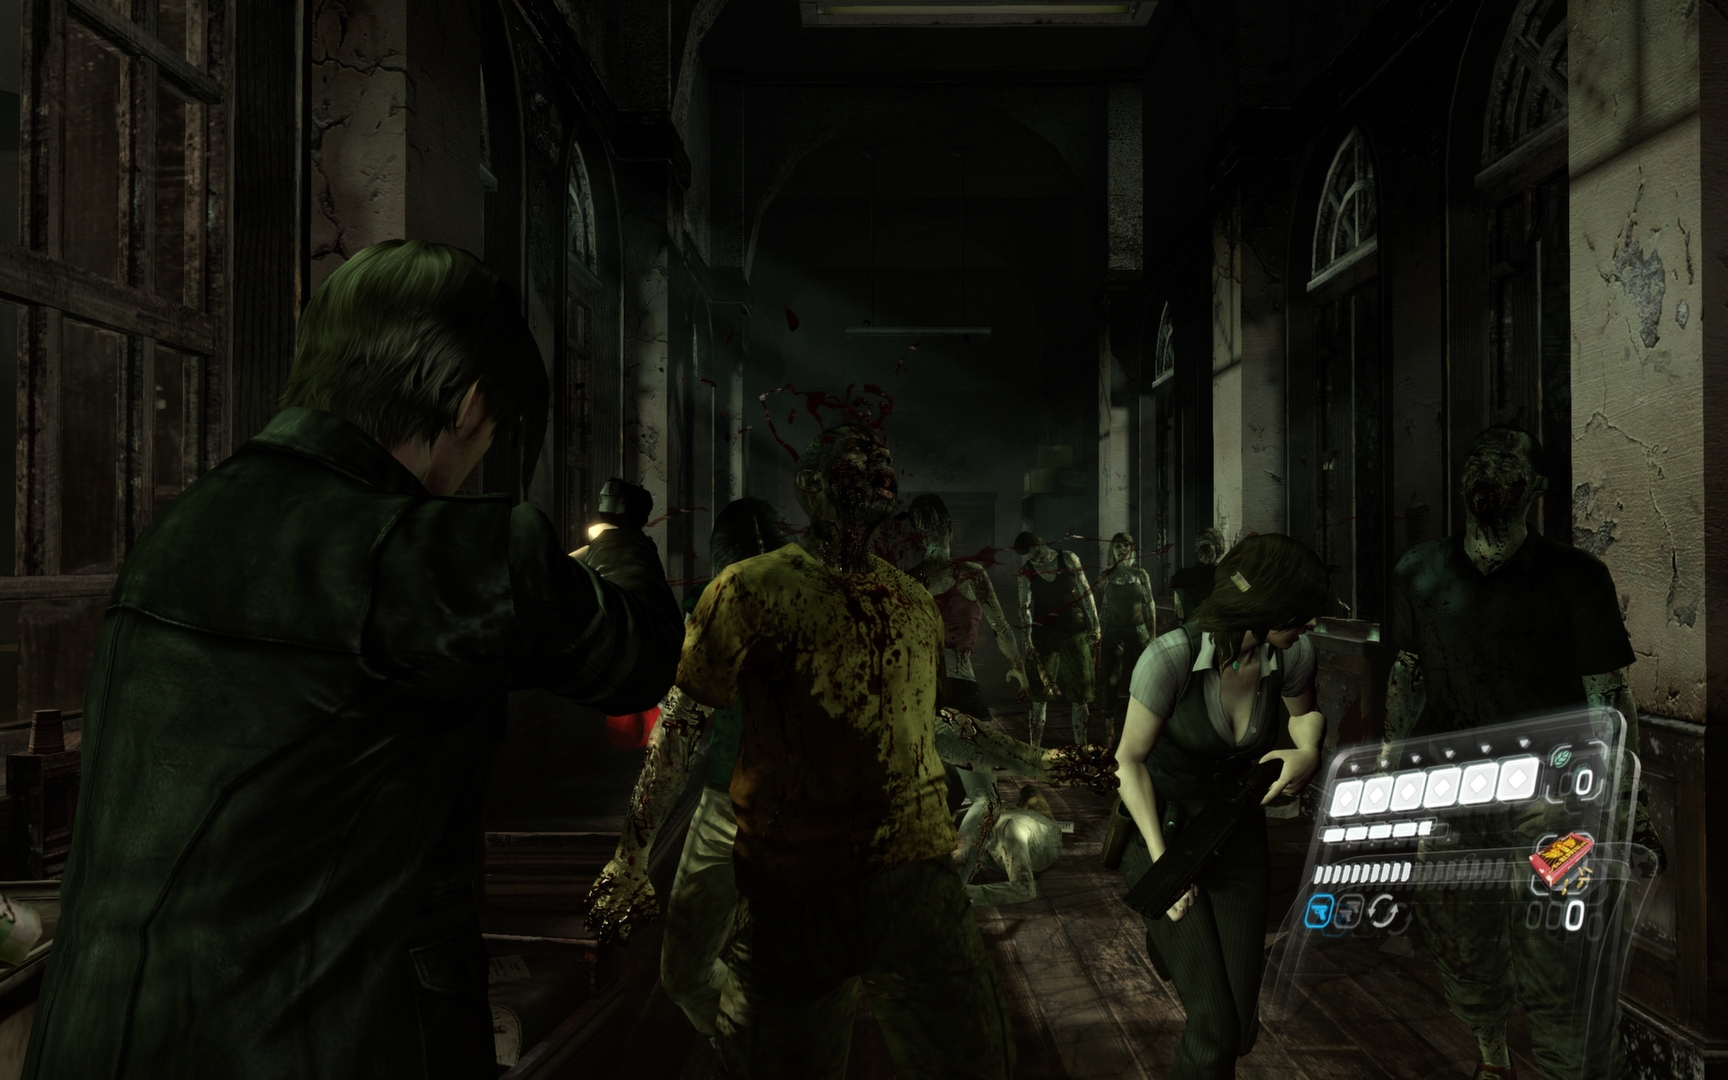 Resident Evil 6 | G (1f5b477c-14dd-4850-b69d-2584618fad31)